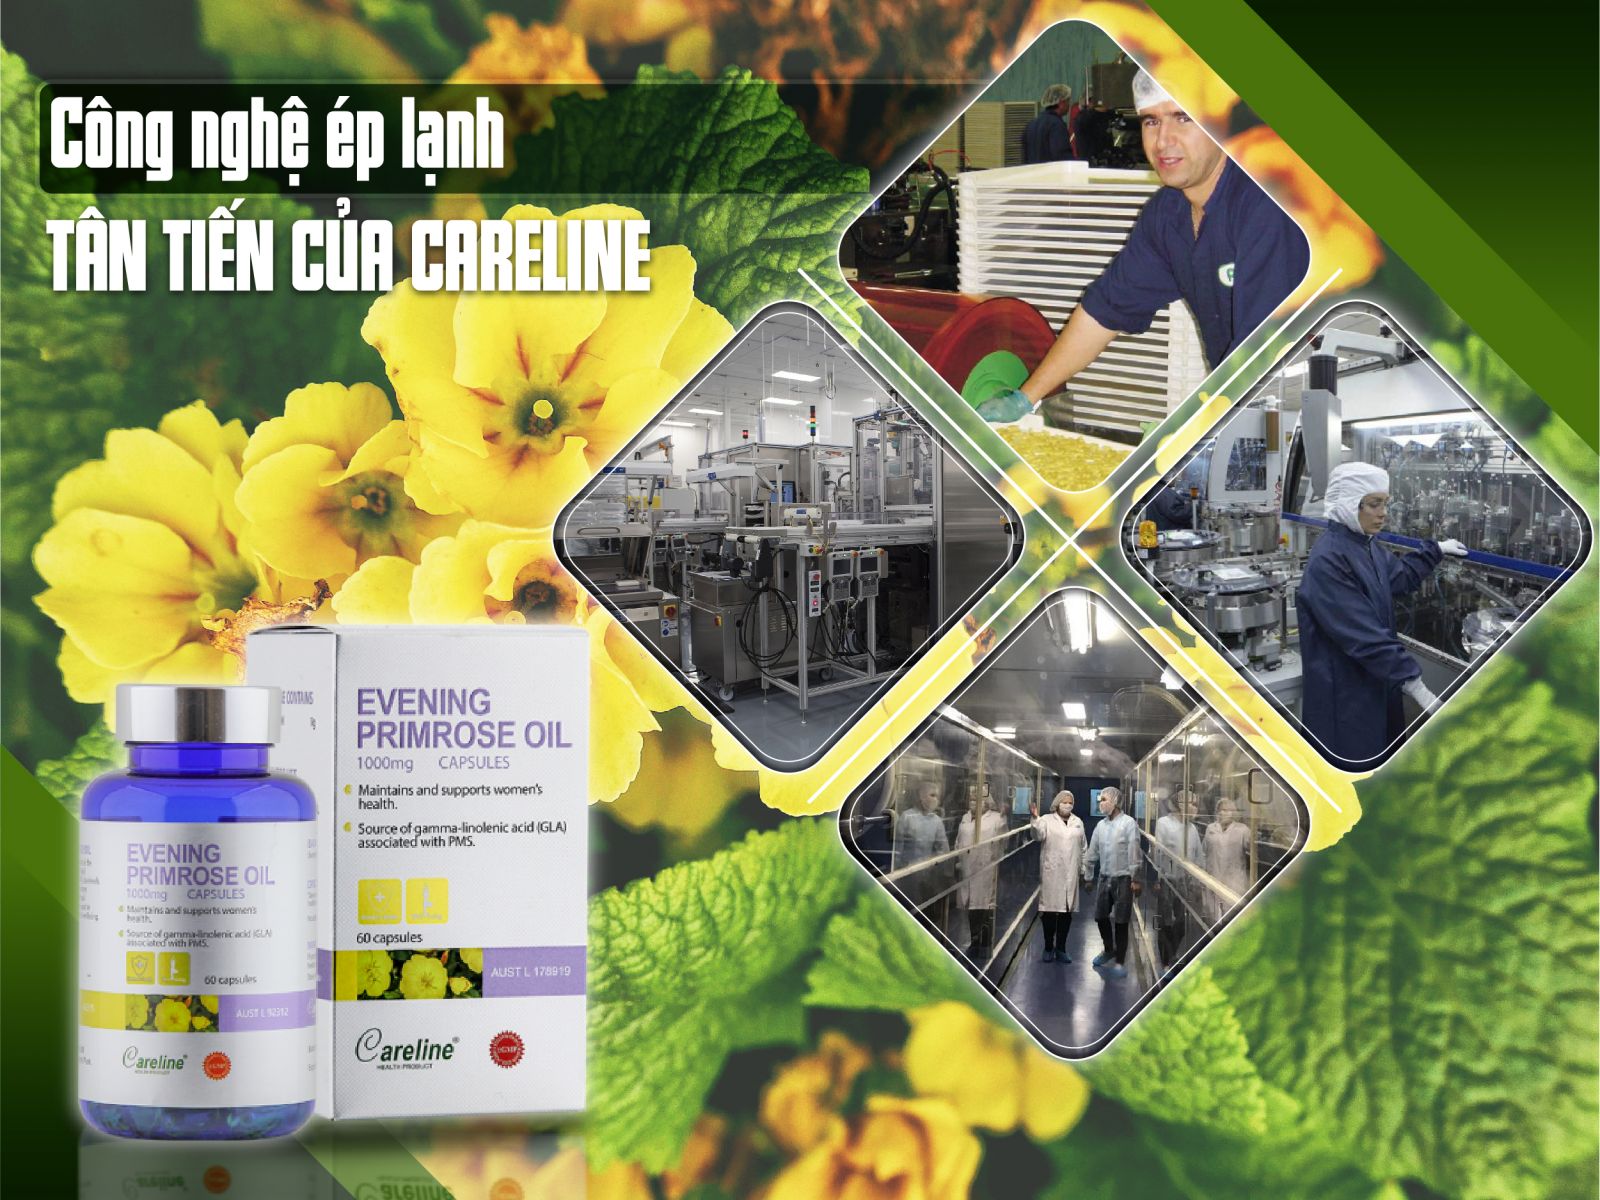 Careline Evening Primrose Oil 1000mg là sản phẩm tinh dầu hoa anh thảo sử dụng phương pháp ép lạnh tân tiến